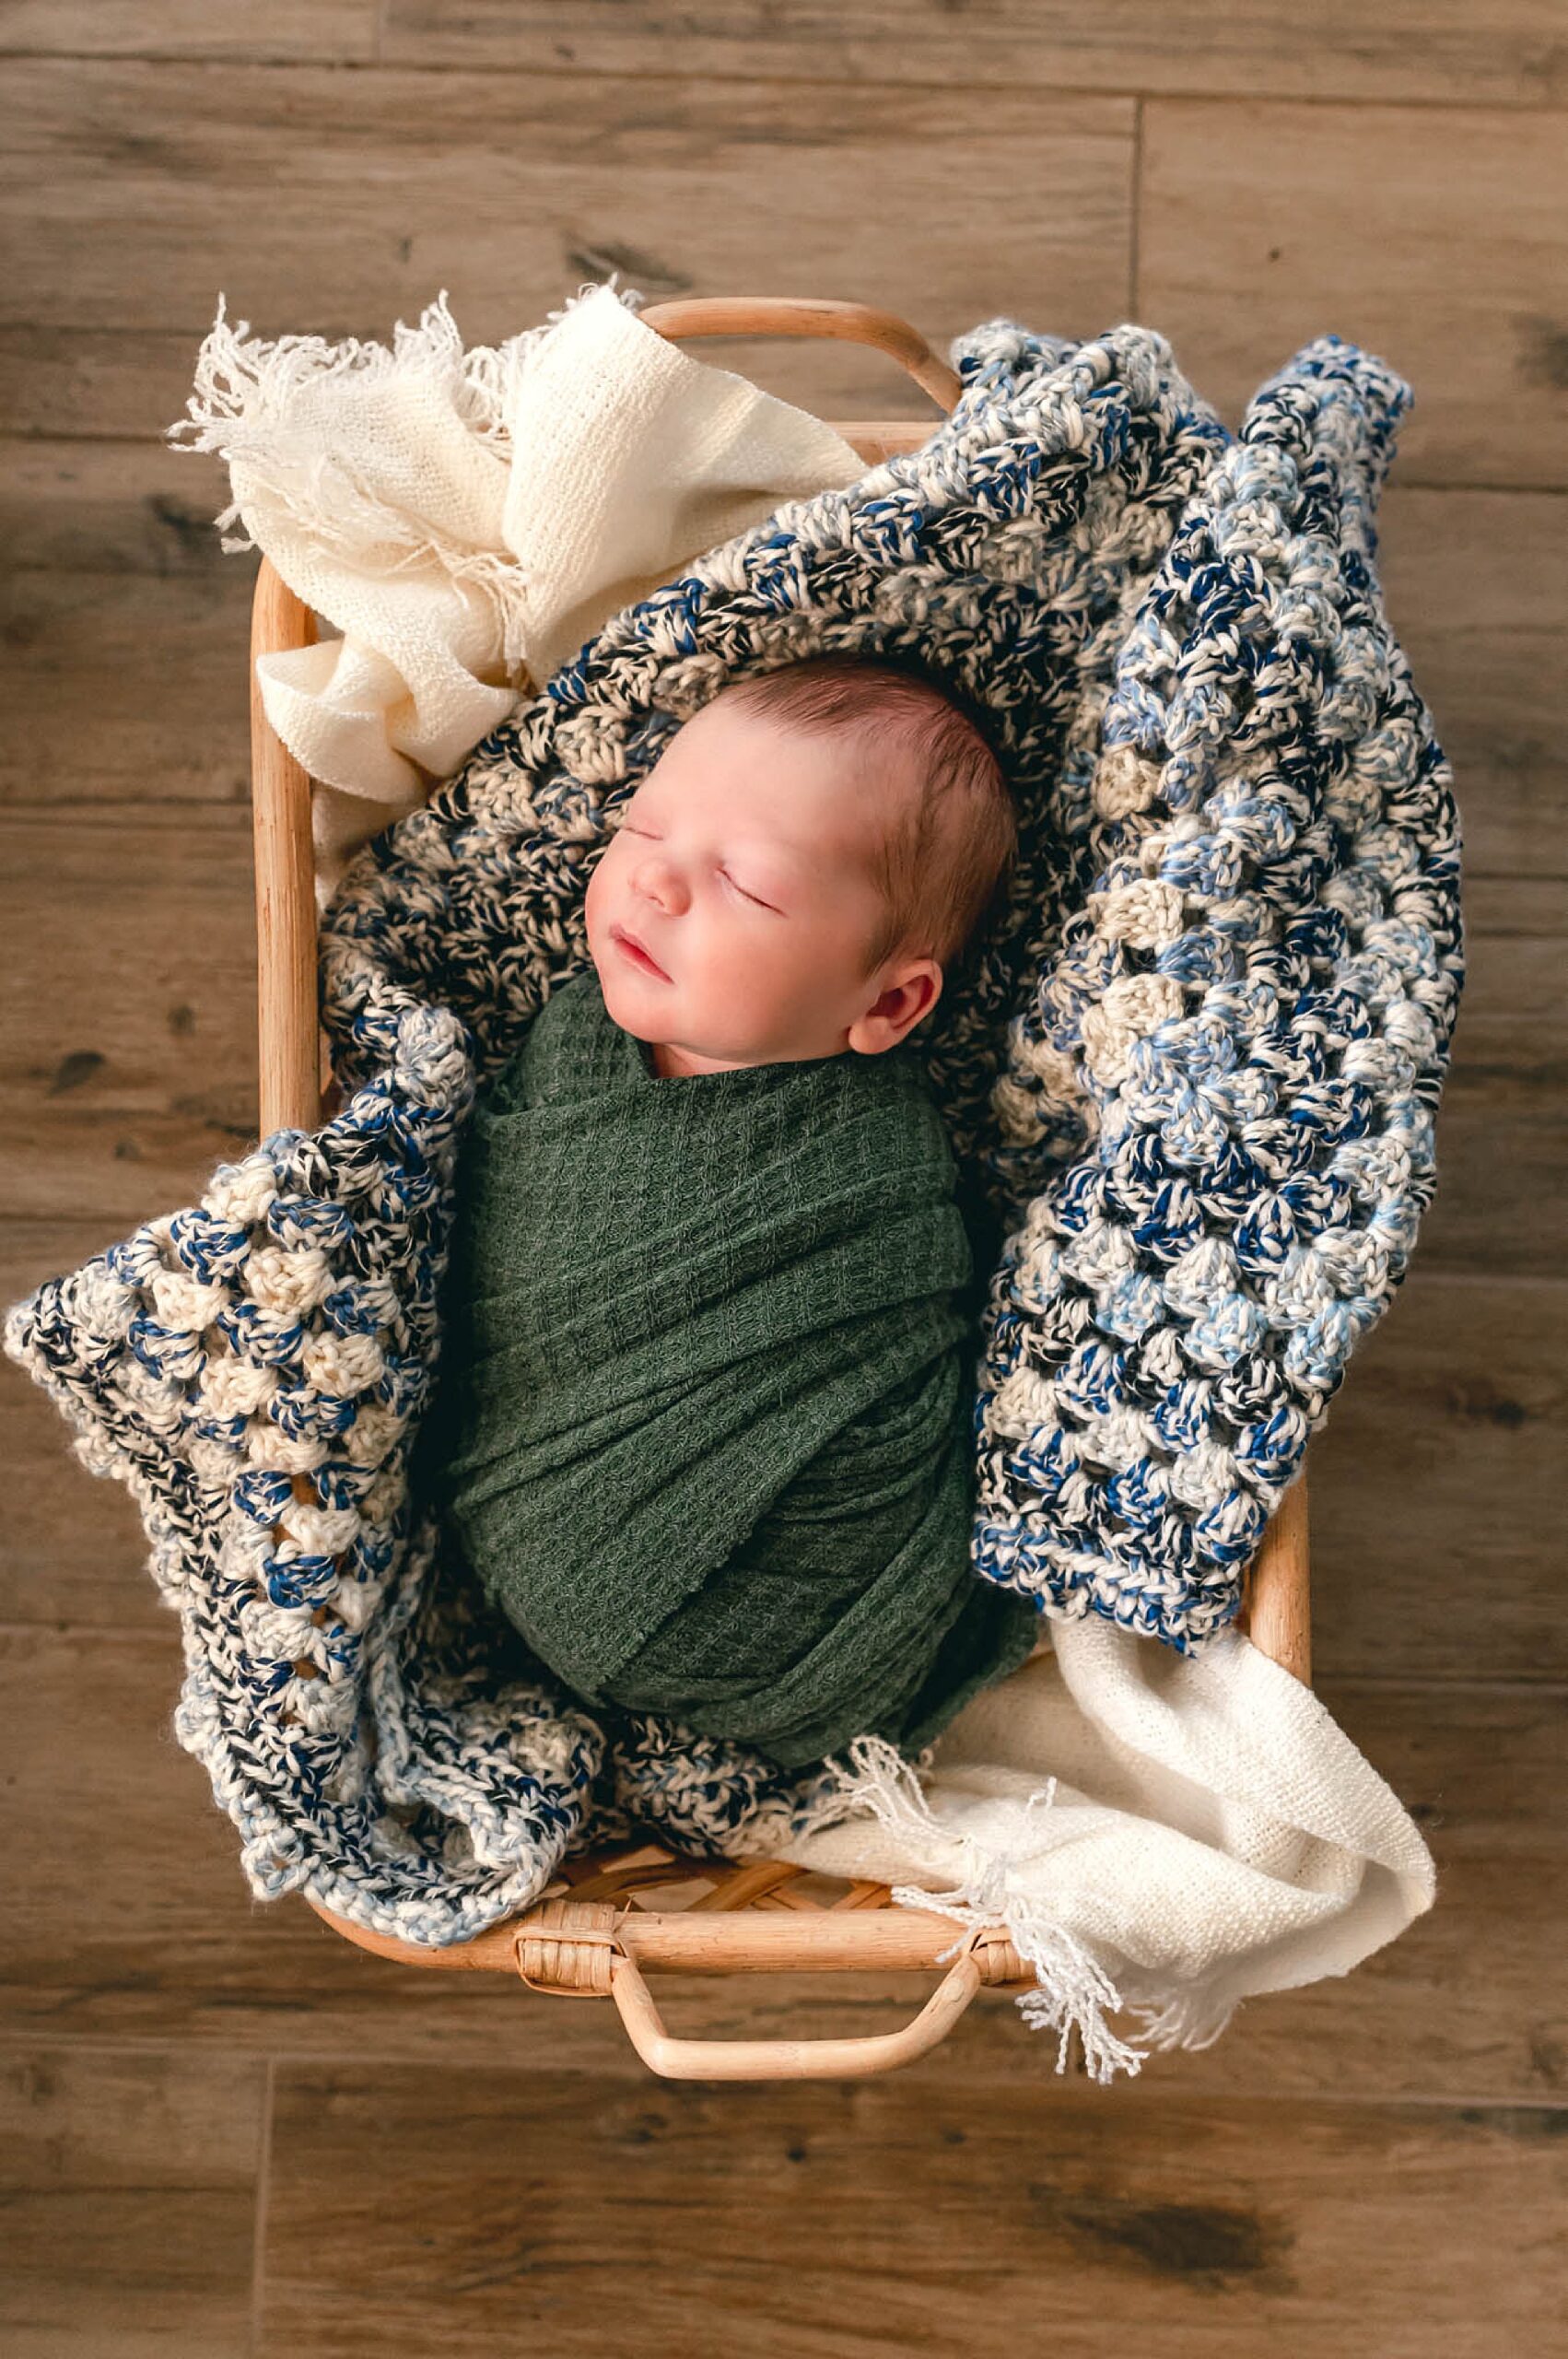 handmade baby blanket